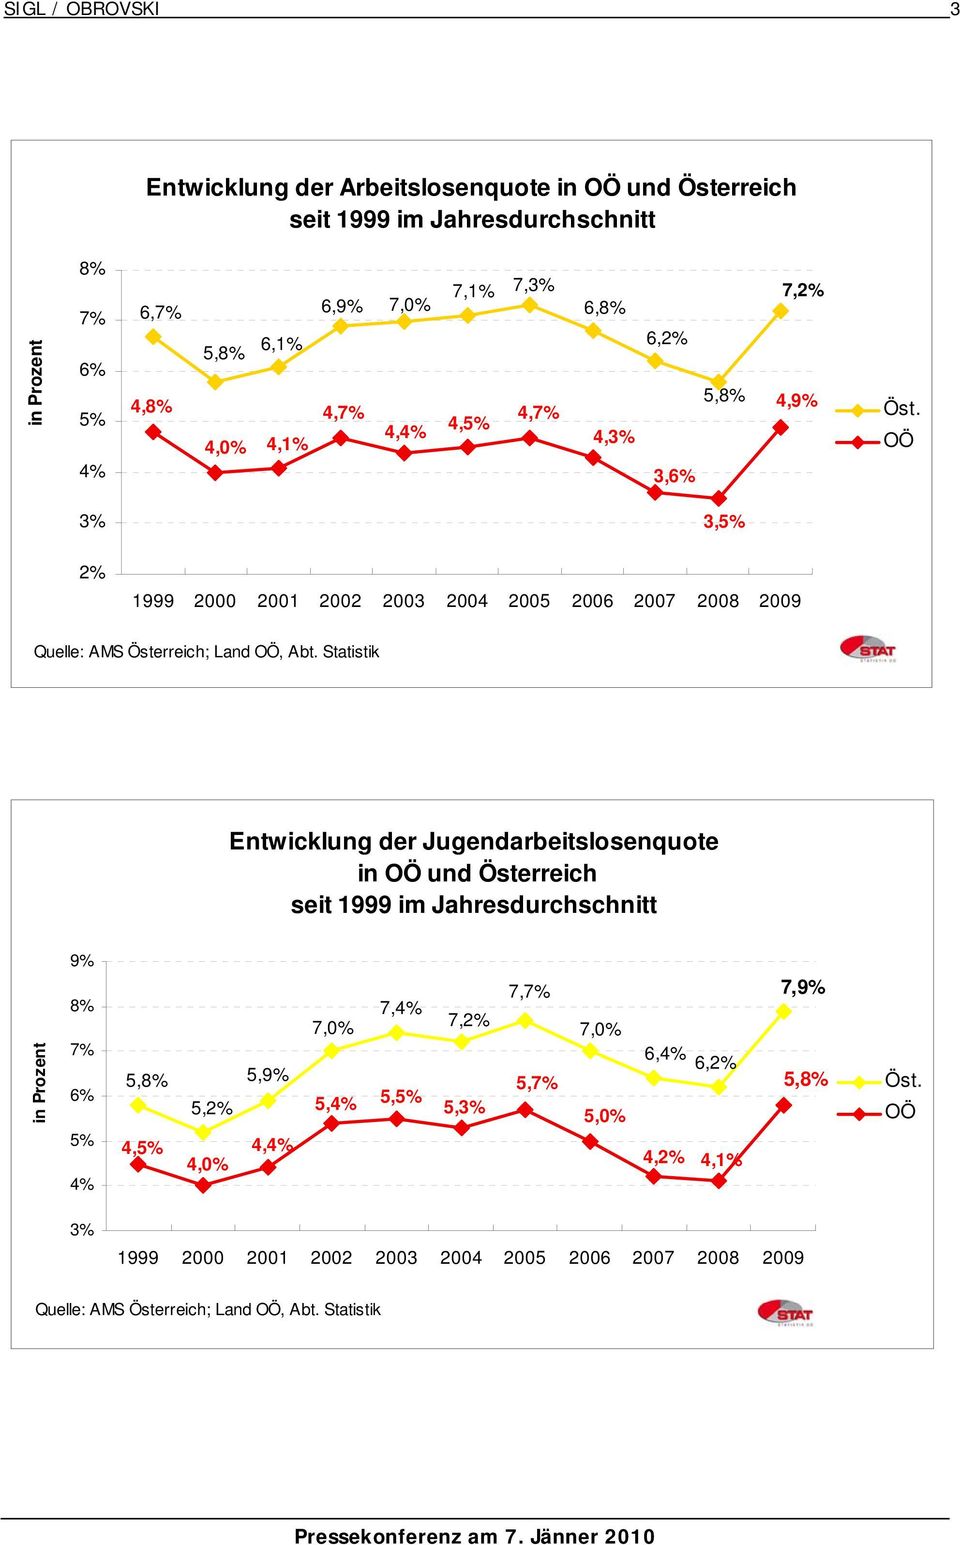 Statistik Entwicklung der Jugendarbeitslosenquote in OÖ und Österreich seit 1999 im Jahresdurchschnitt in Prozent 9% 8% 7% 6% 5% 4% 7,7% 7,9% 7,4% 7,0% 7,2% 7,0% 6,4% 6,2%